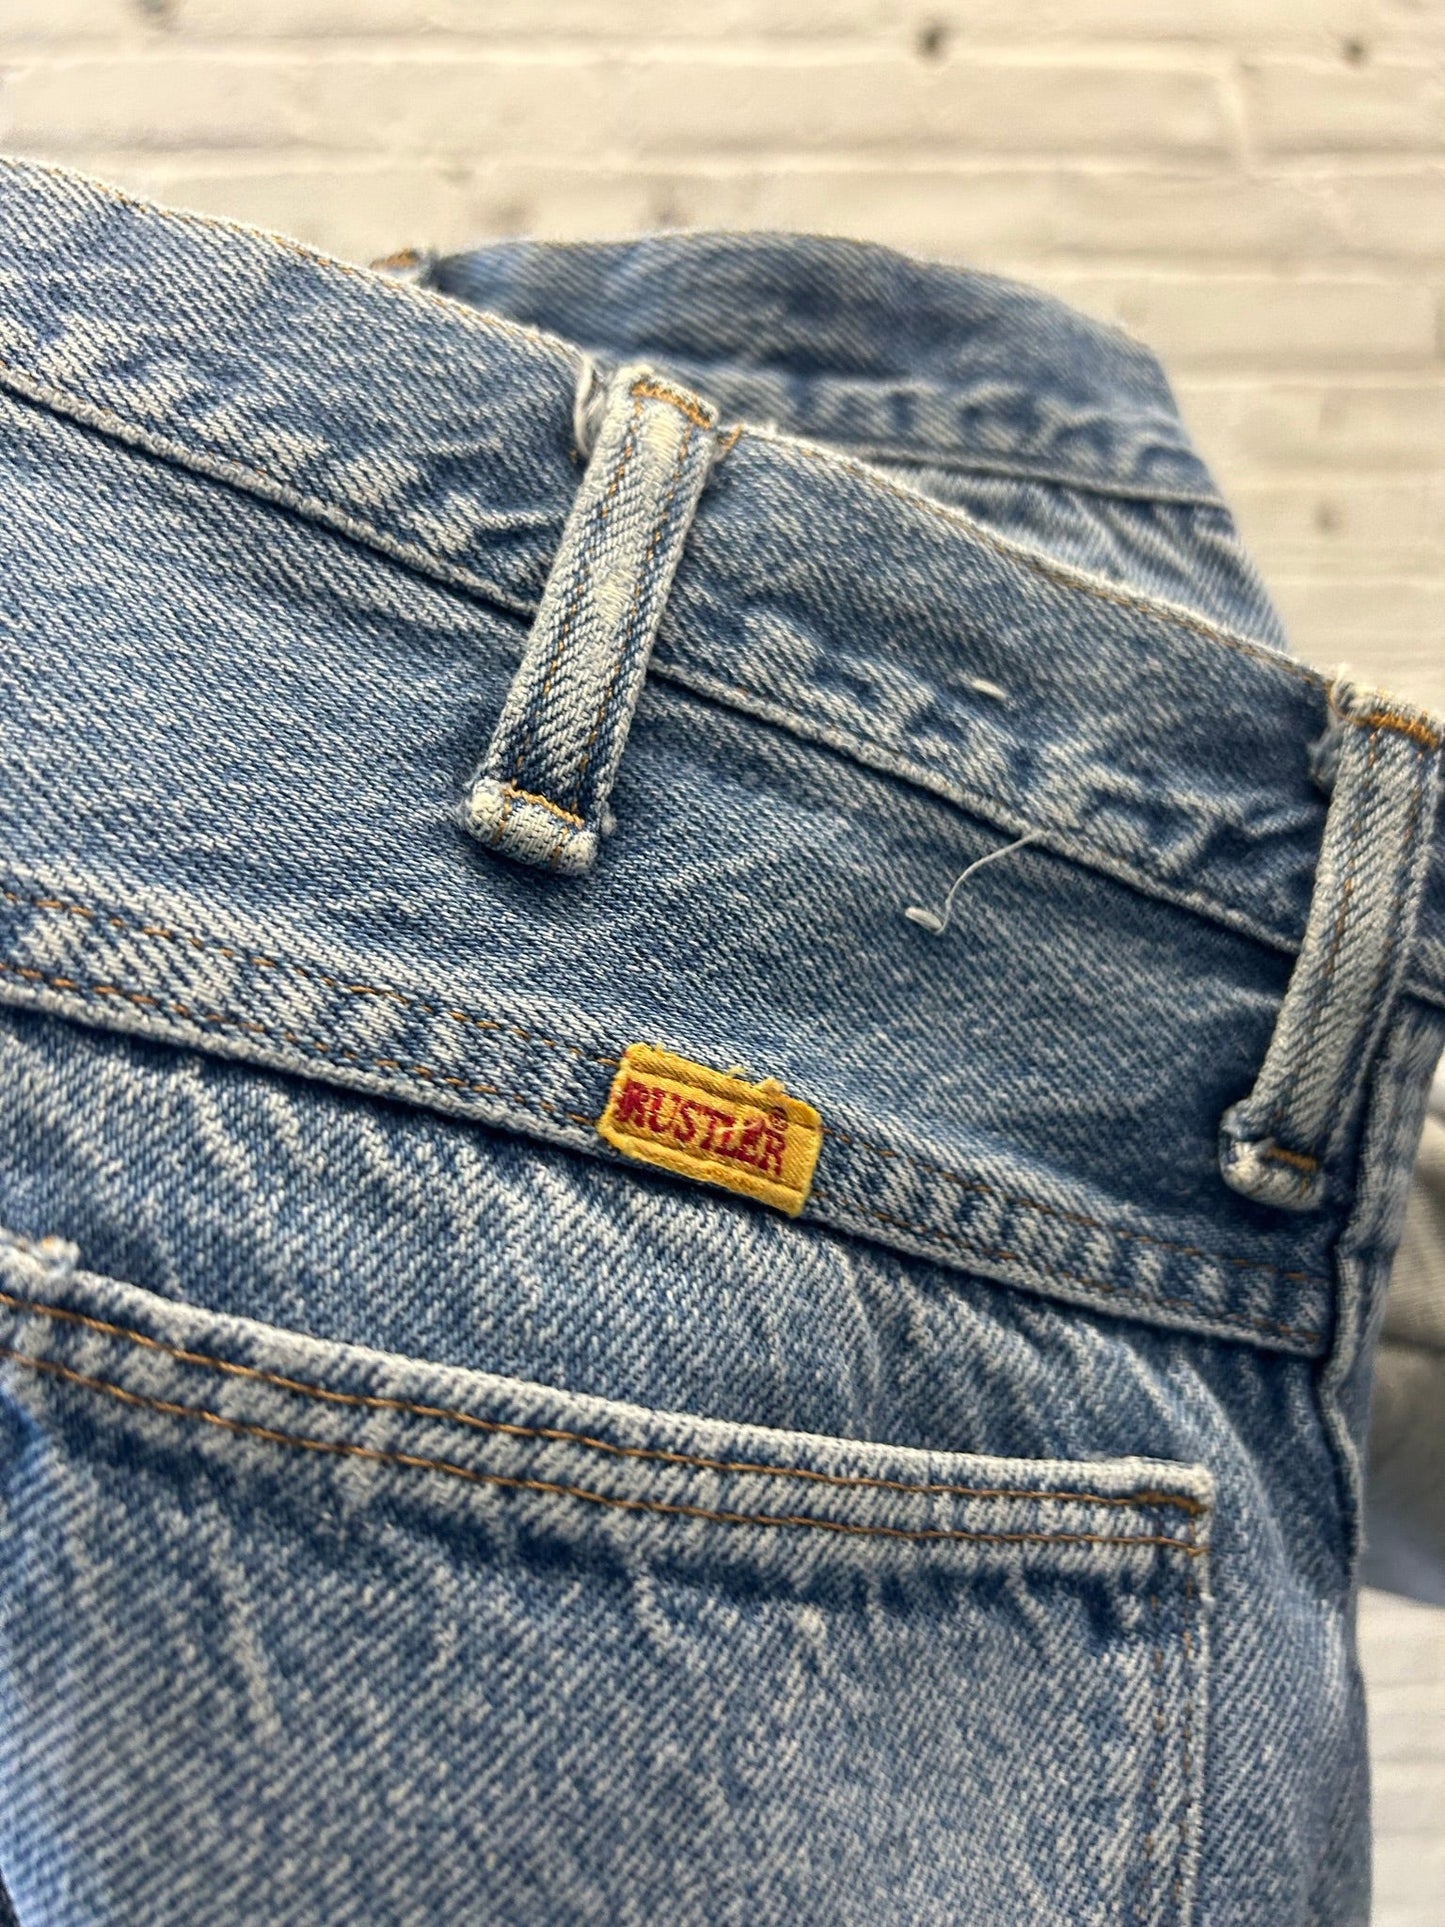 Rustler Denim Jeans Size 38x32